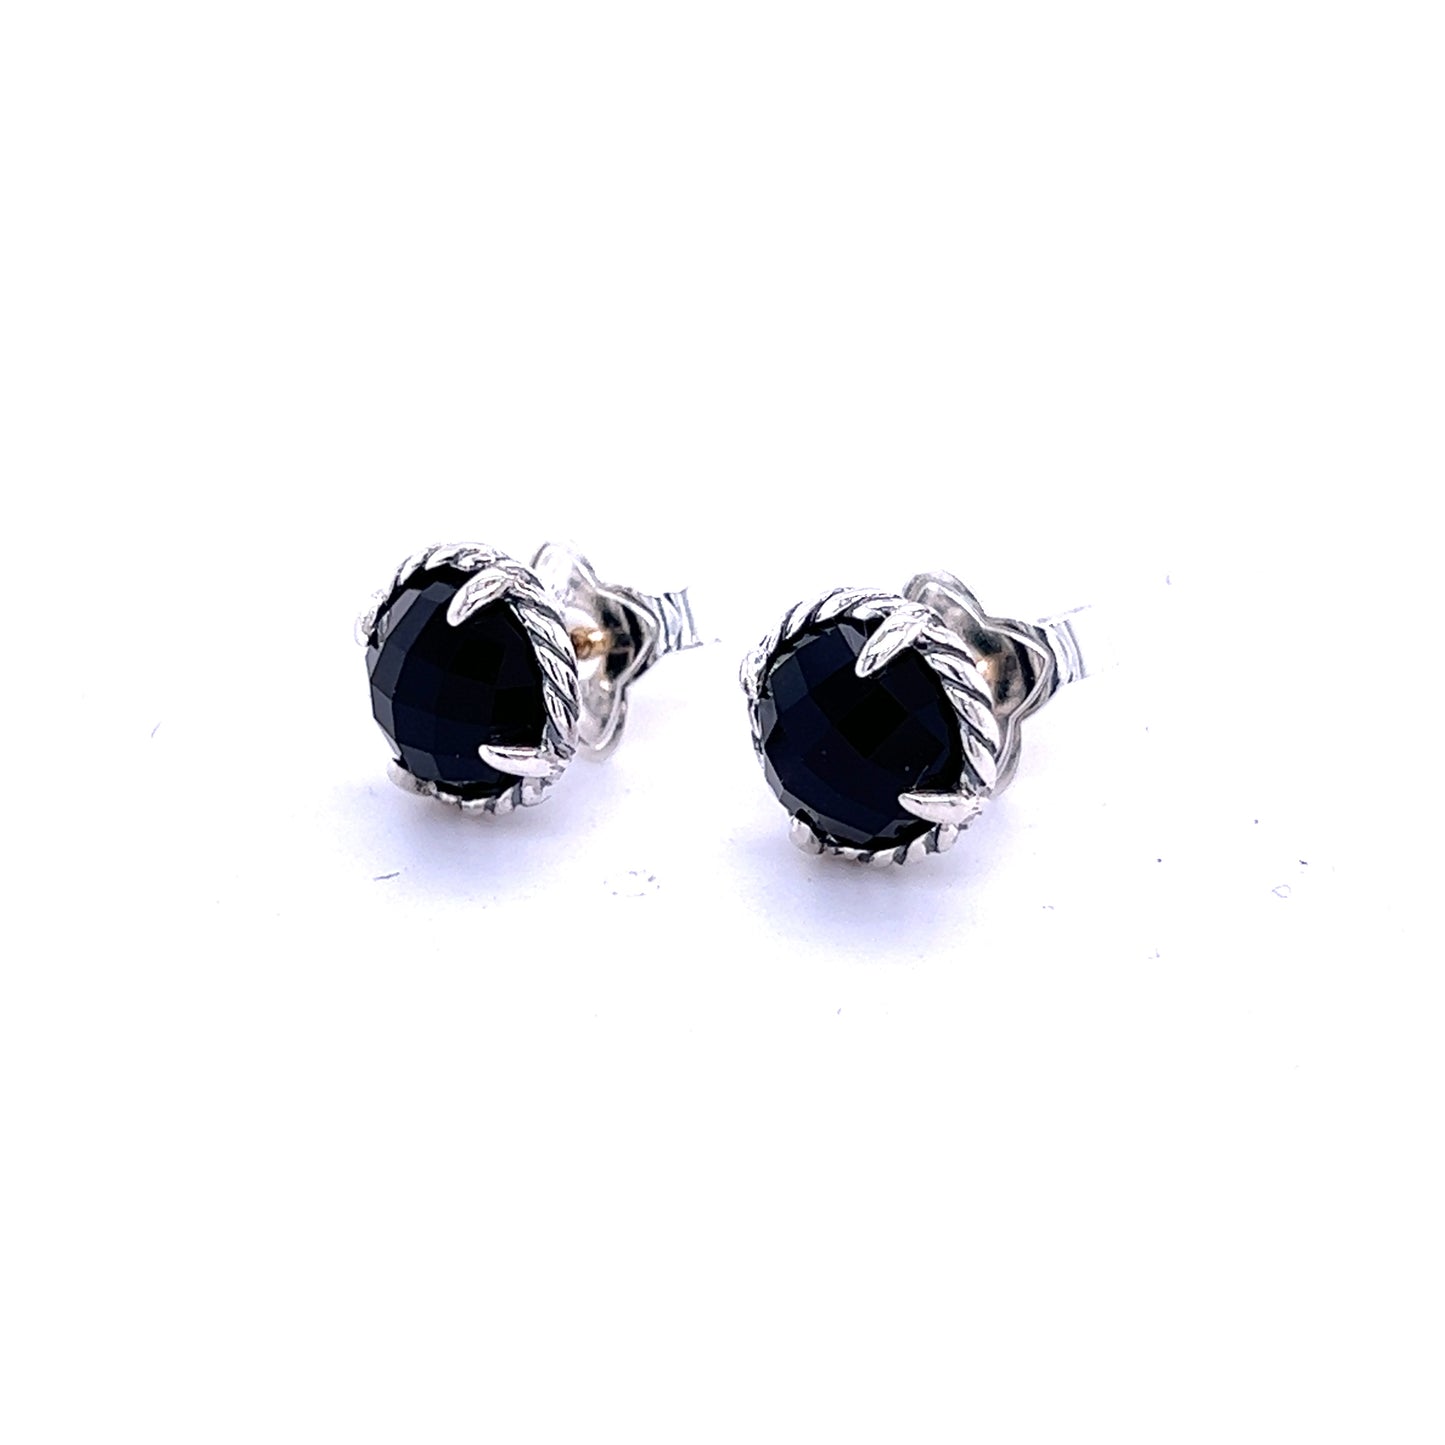 David Yurman Authentic Estate Black Onyx Chantelaine Stud Earrings Silver DY355 - Certified Fine Jewelry